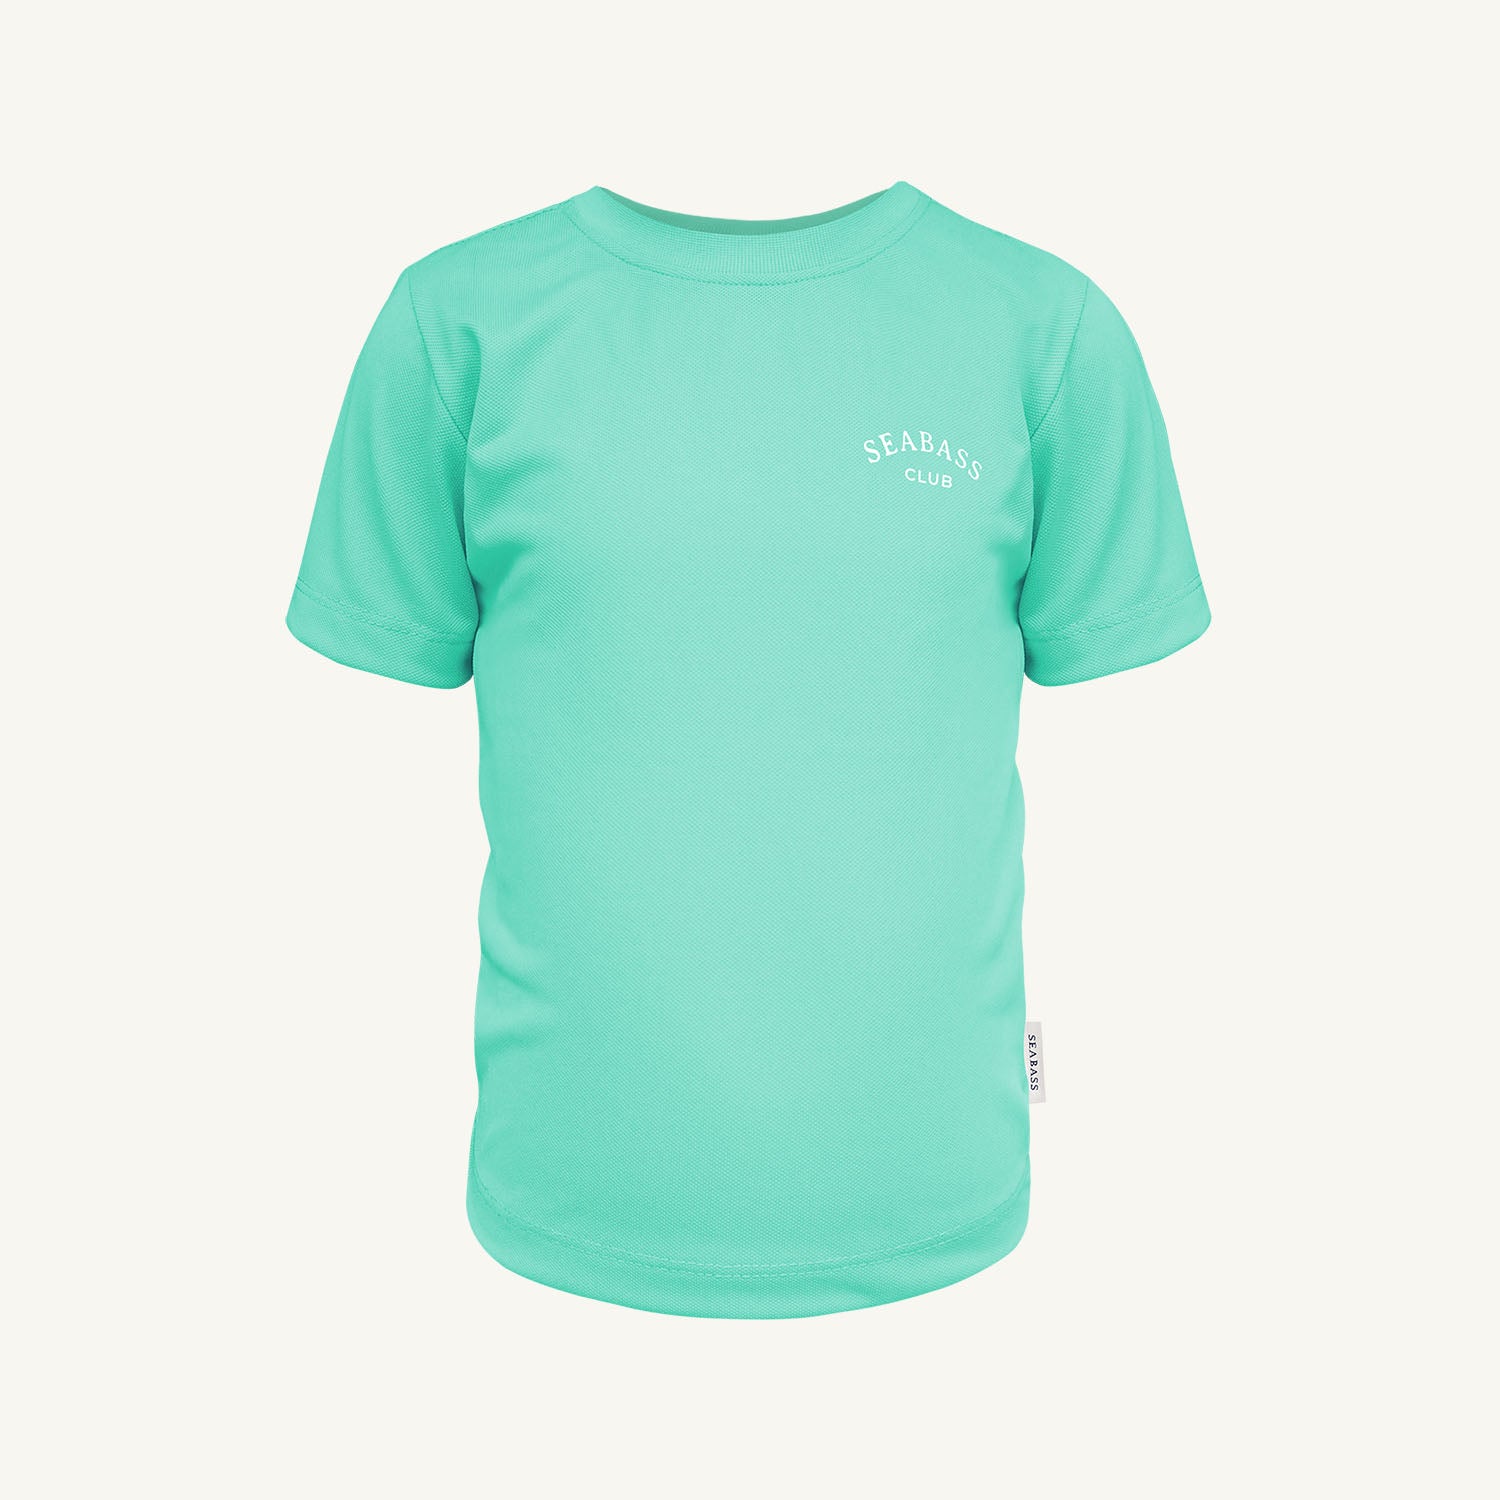 Camiseta de niño con protección solar - verde menta